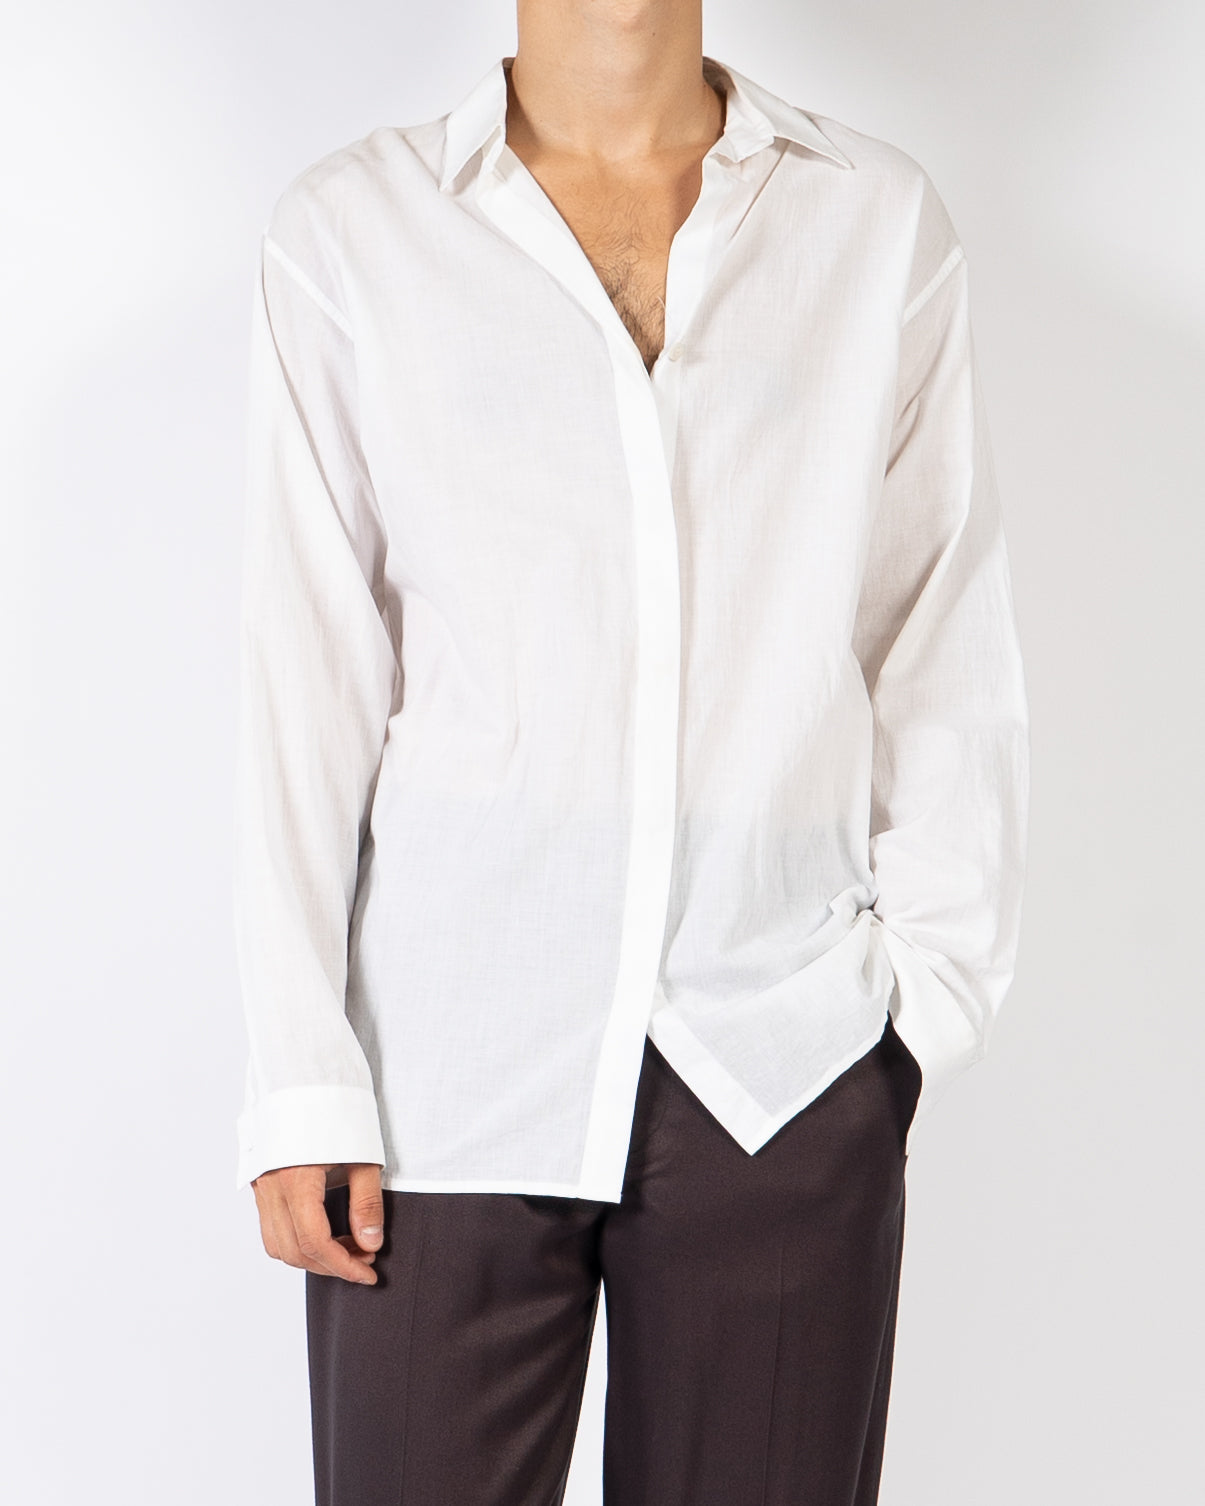 FW13 White Cotton Shirt